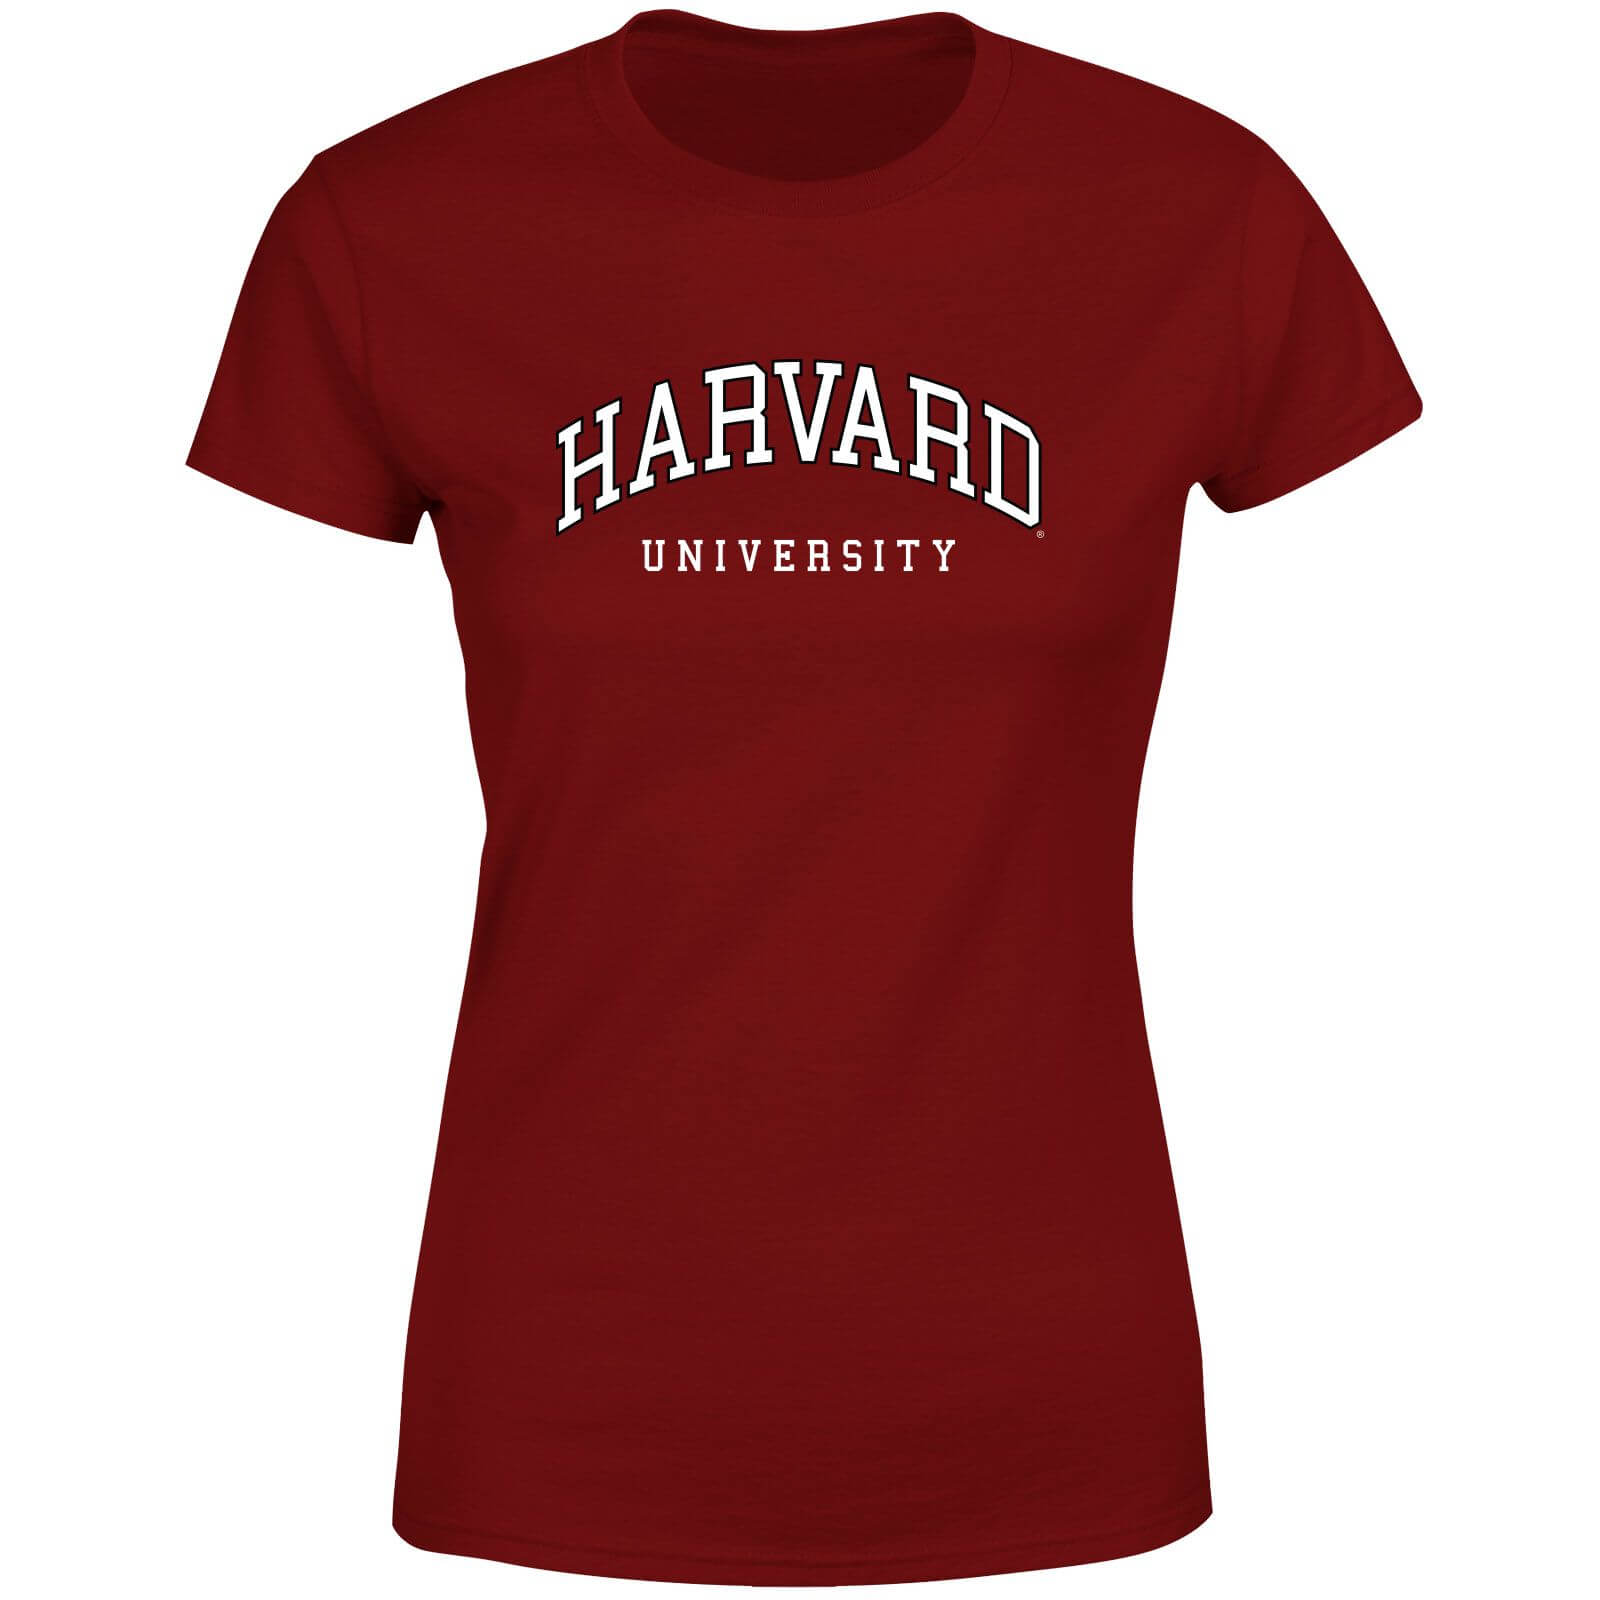 Harvard Burgundy Tee Women's T-Shirt - Burgundy - XS